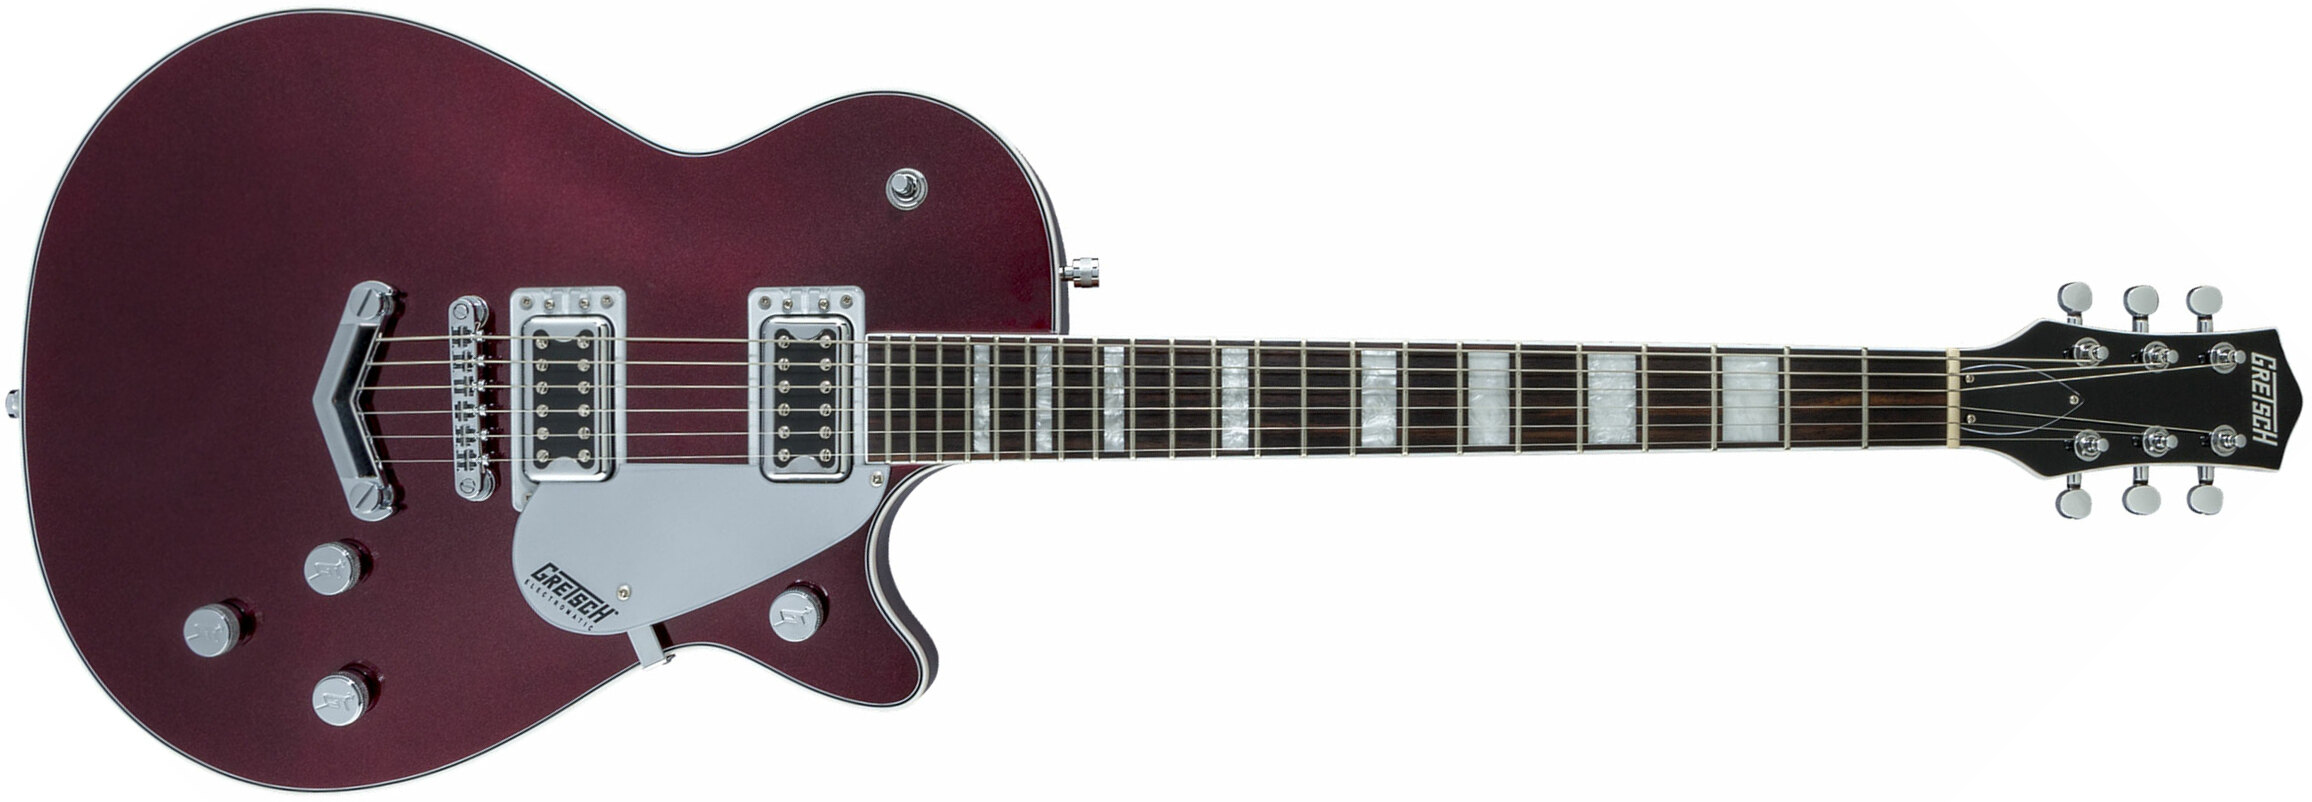 Gretsch G5220 Electromatic Jet Bt V-stoptail Hh Ht Wal - Dark Cherry Metallic - Enkel gesneden elektrische gitaar - Main picture